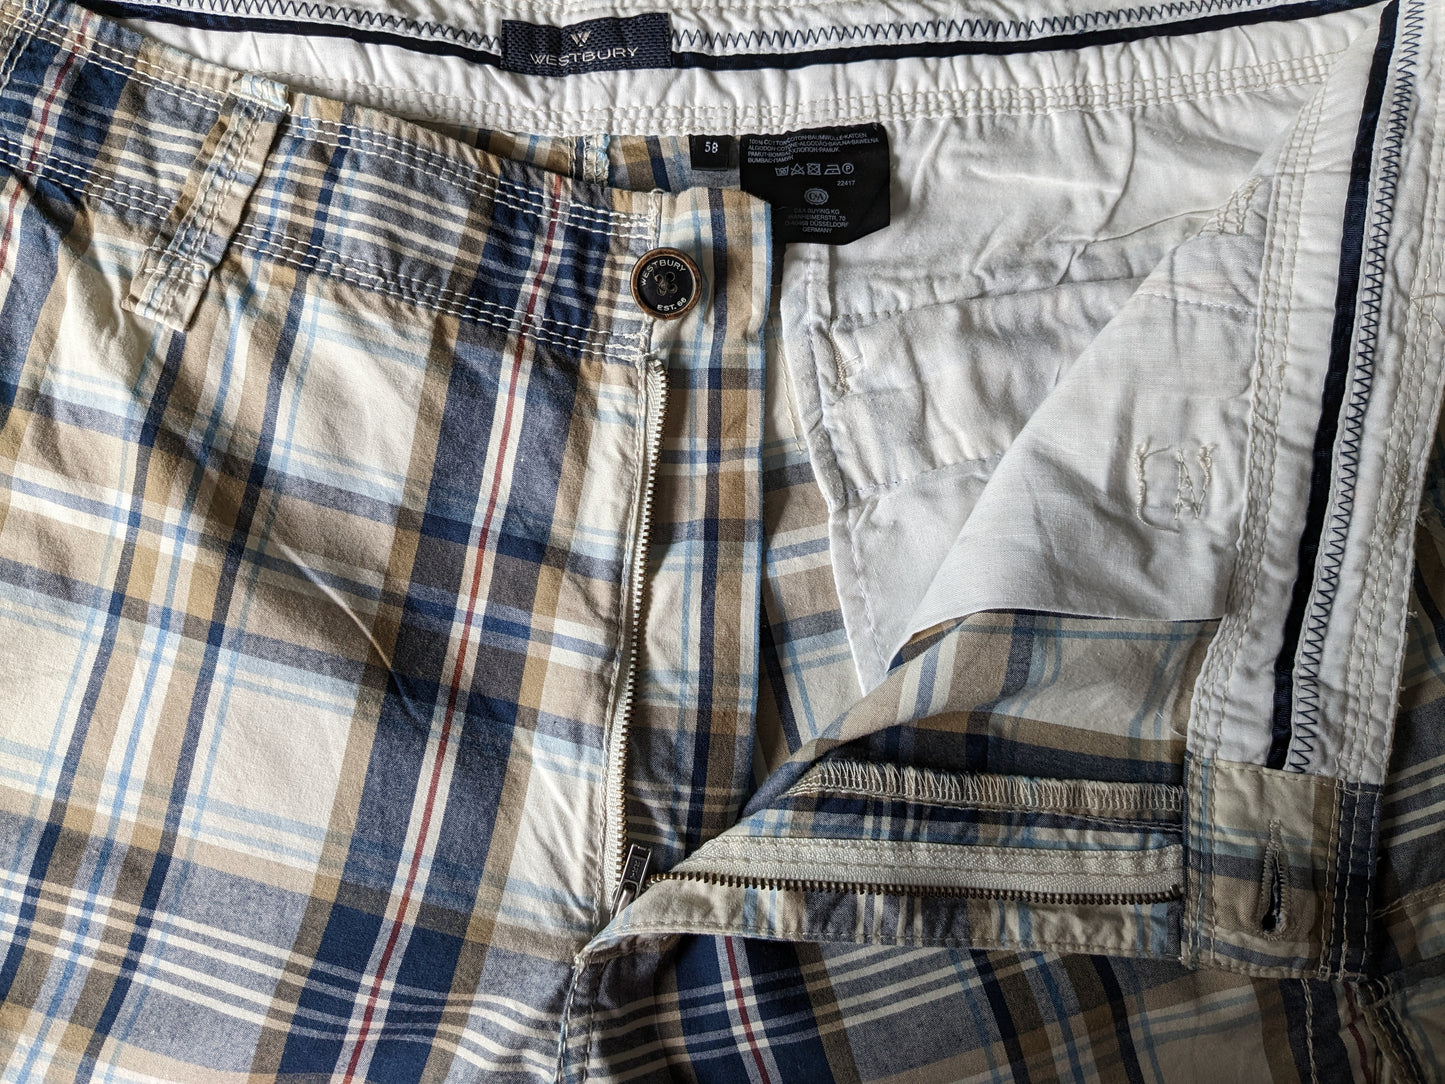 Westbury Shorts con bolsas. Beige Beige Beige revisado. Tamaño 58 / xl.